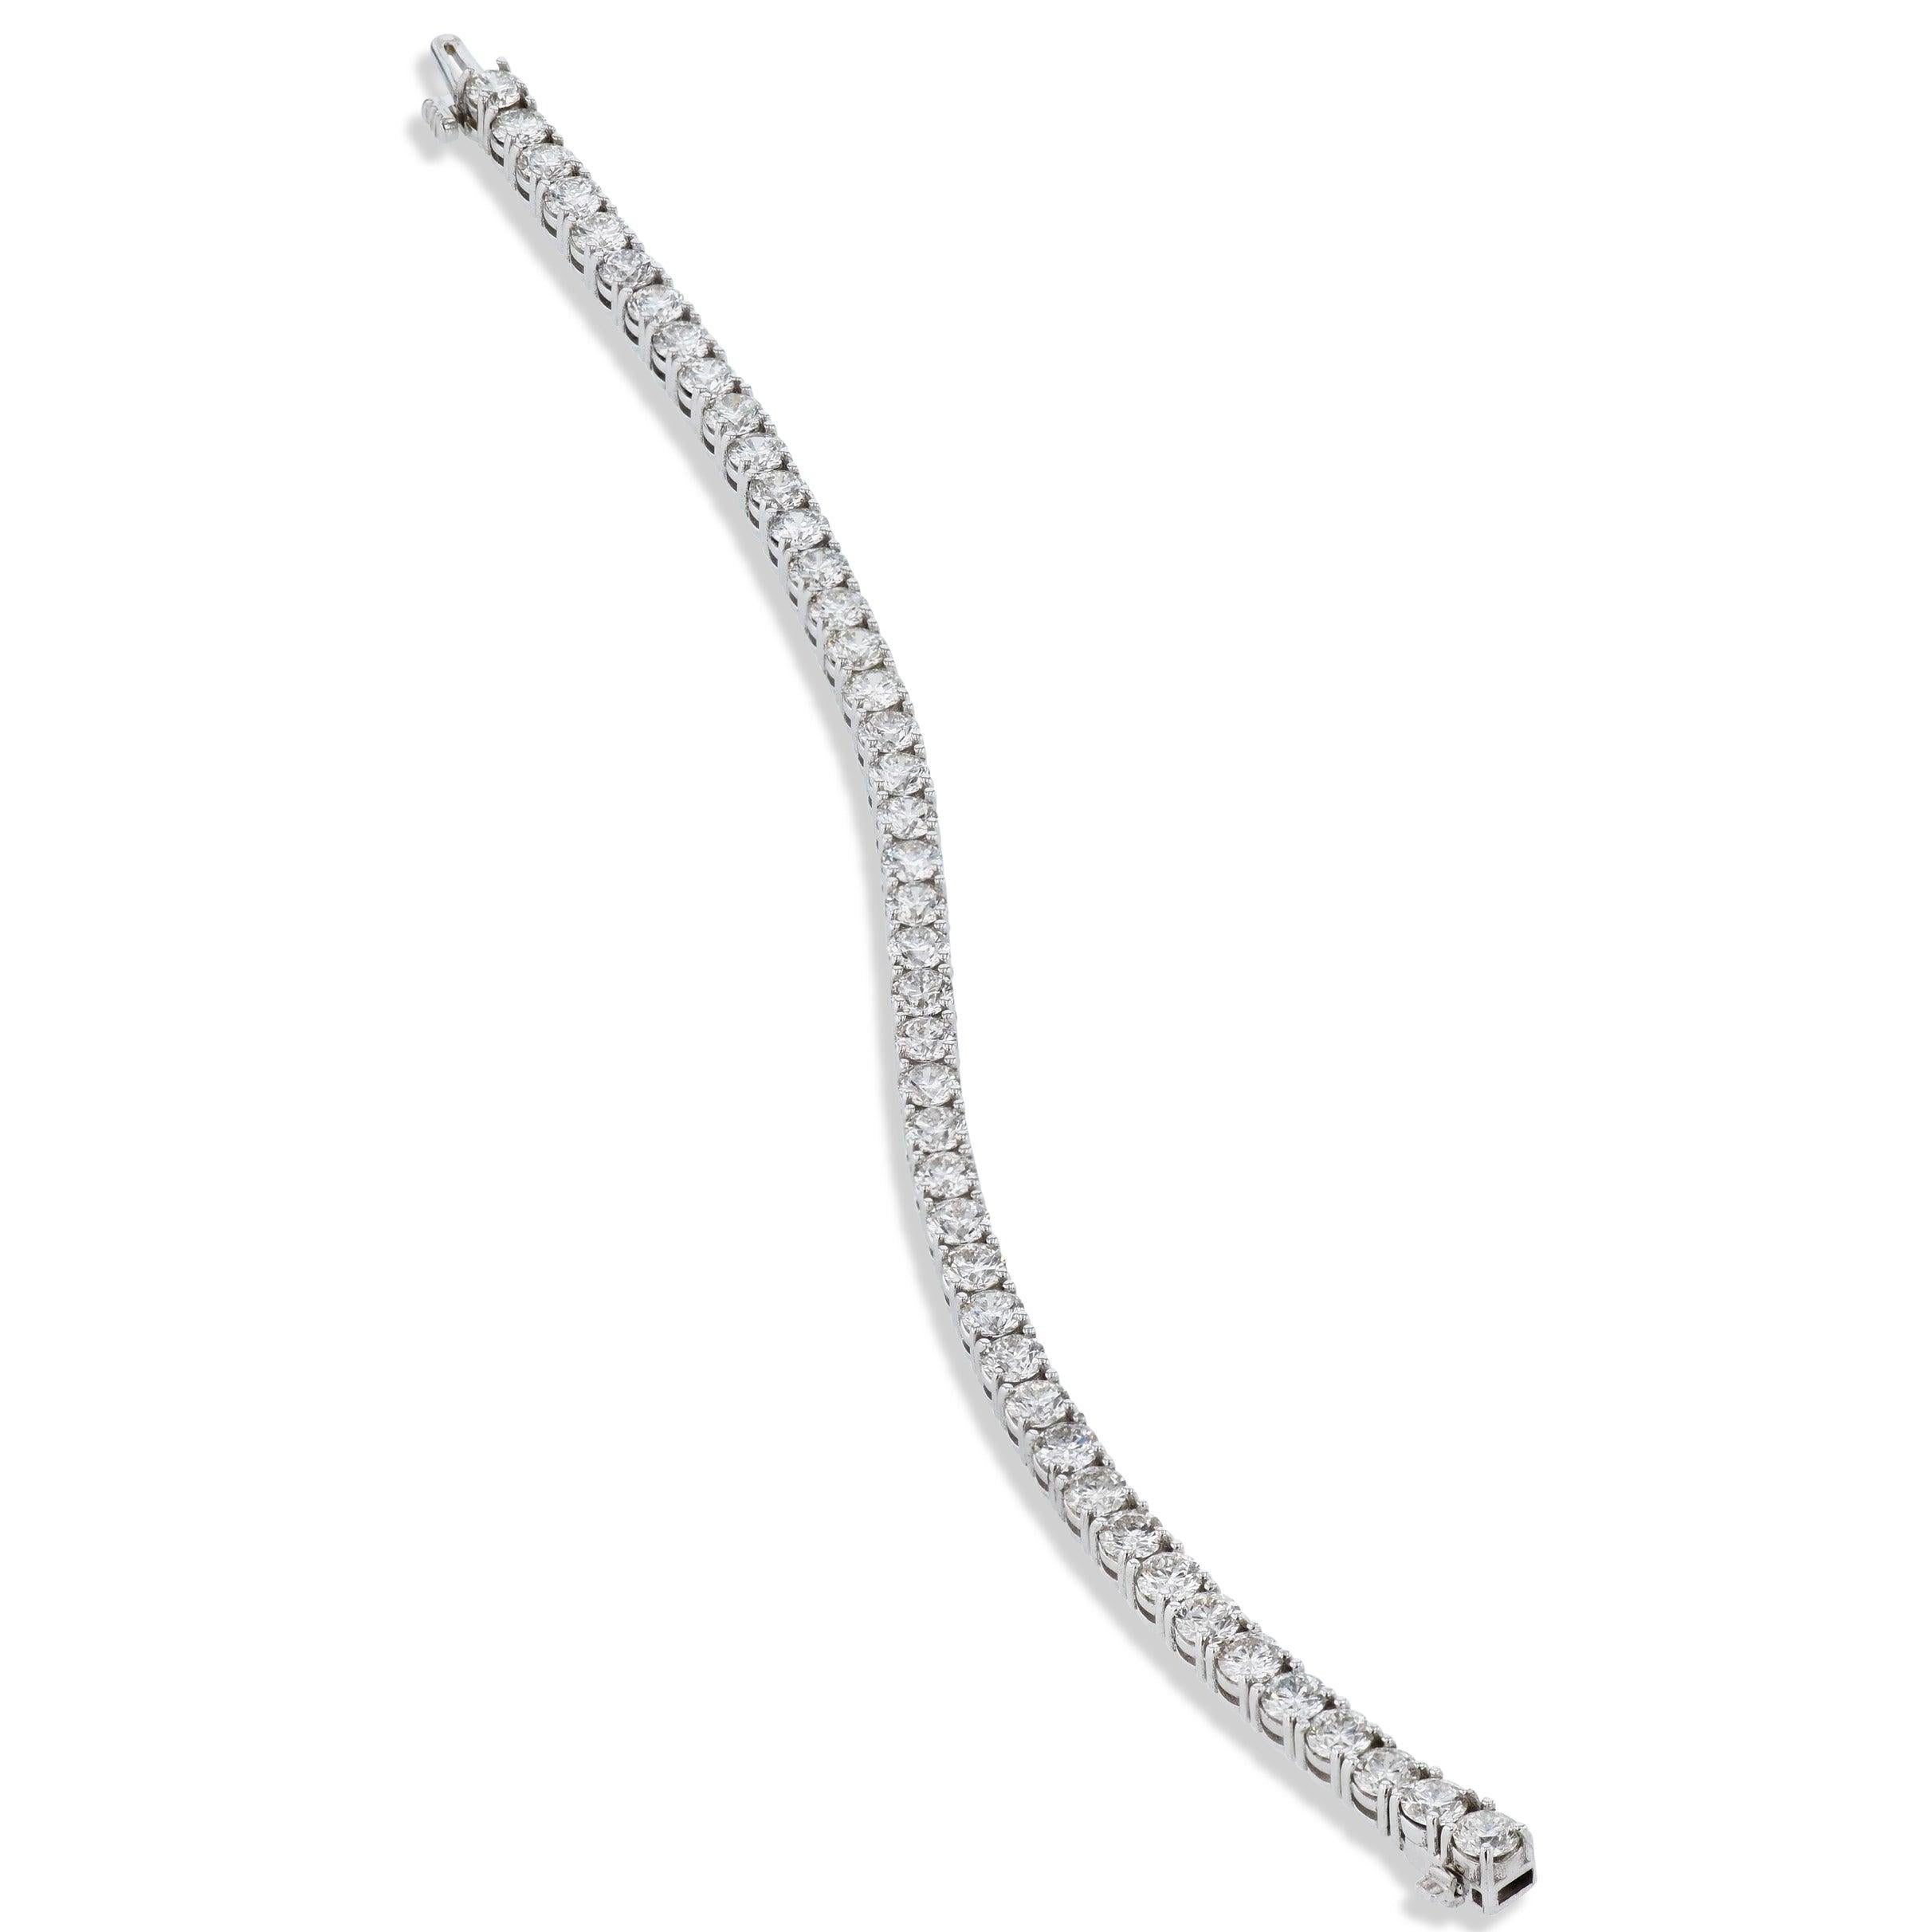 
Ce bracelet de tennis en or blanc 18 carats de la Collection Whitingal met en valeur de manière immaculée 44 diamants de la plus haute qualité et d'un poids total de 8,69 carats. Fabriquée méticuleusement à la main, cette belle pièce respire le